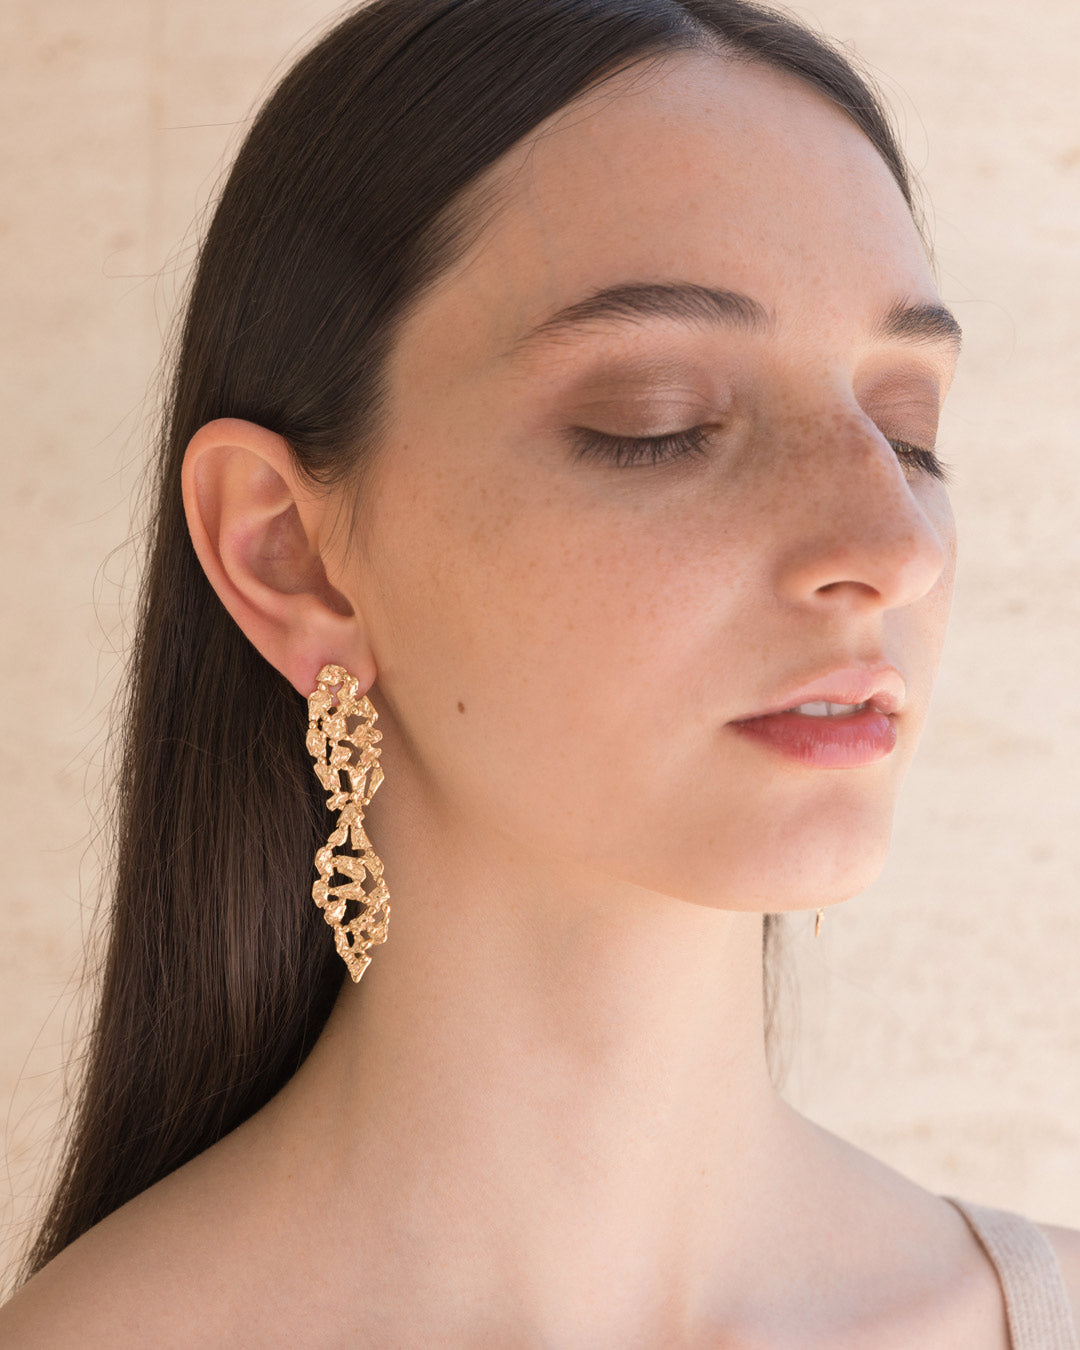 Handmade pendant earrings - Giulia Barela 